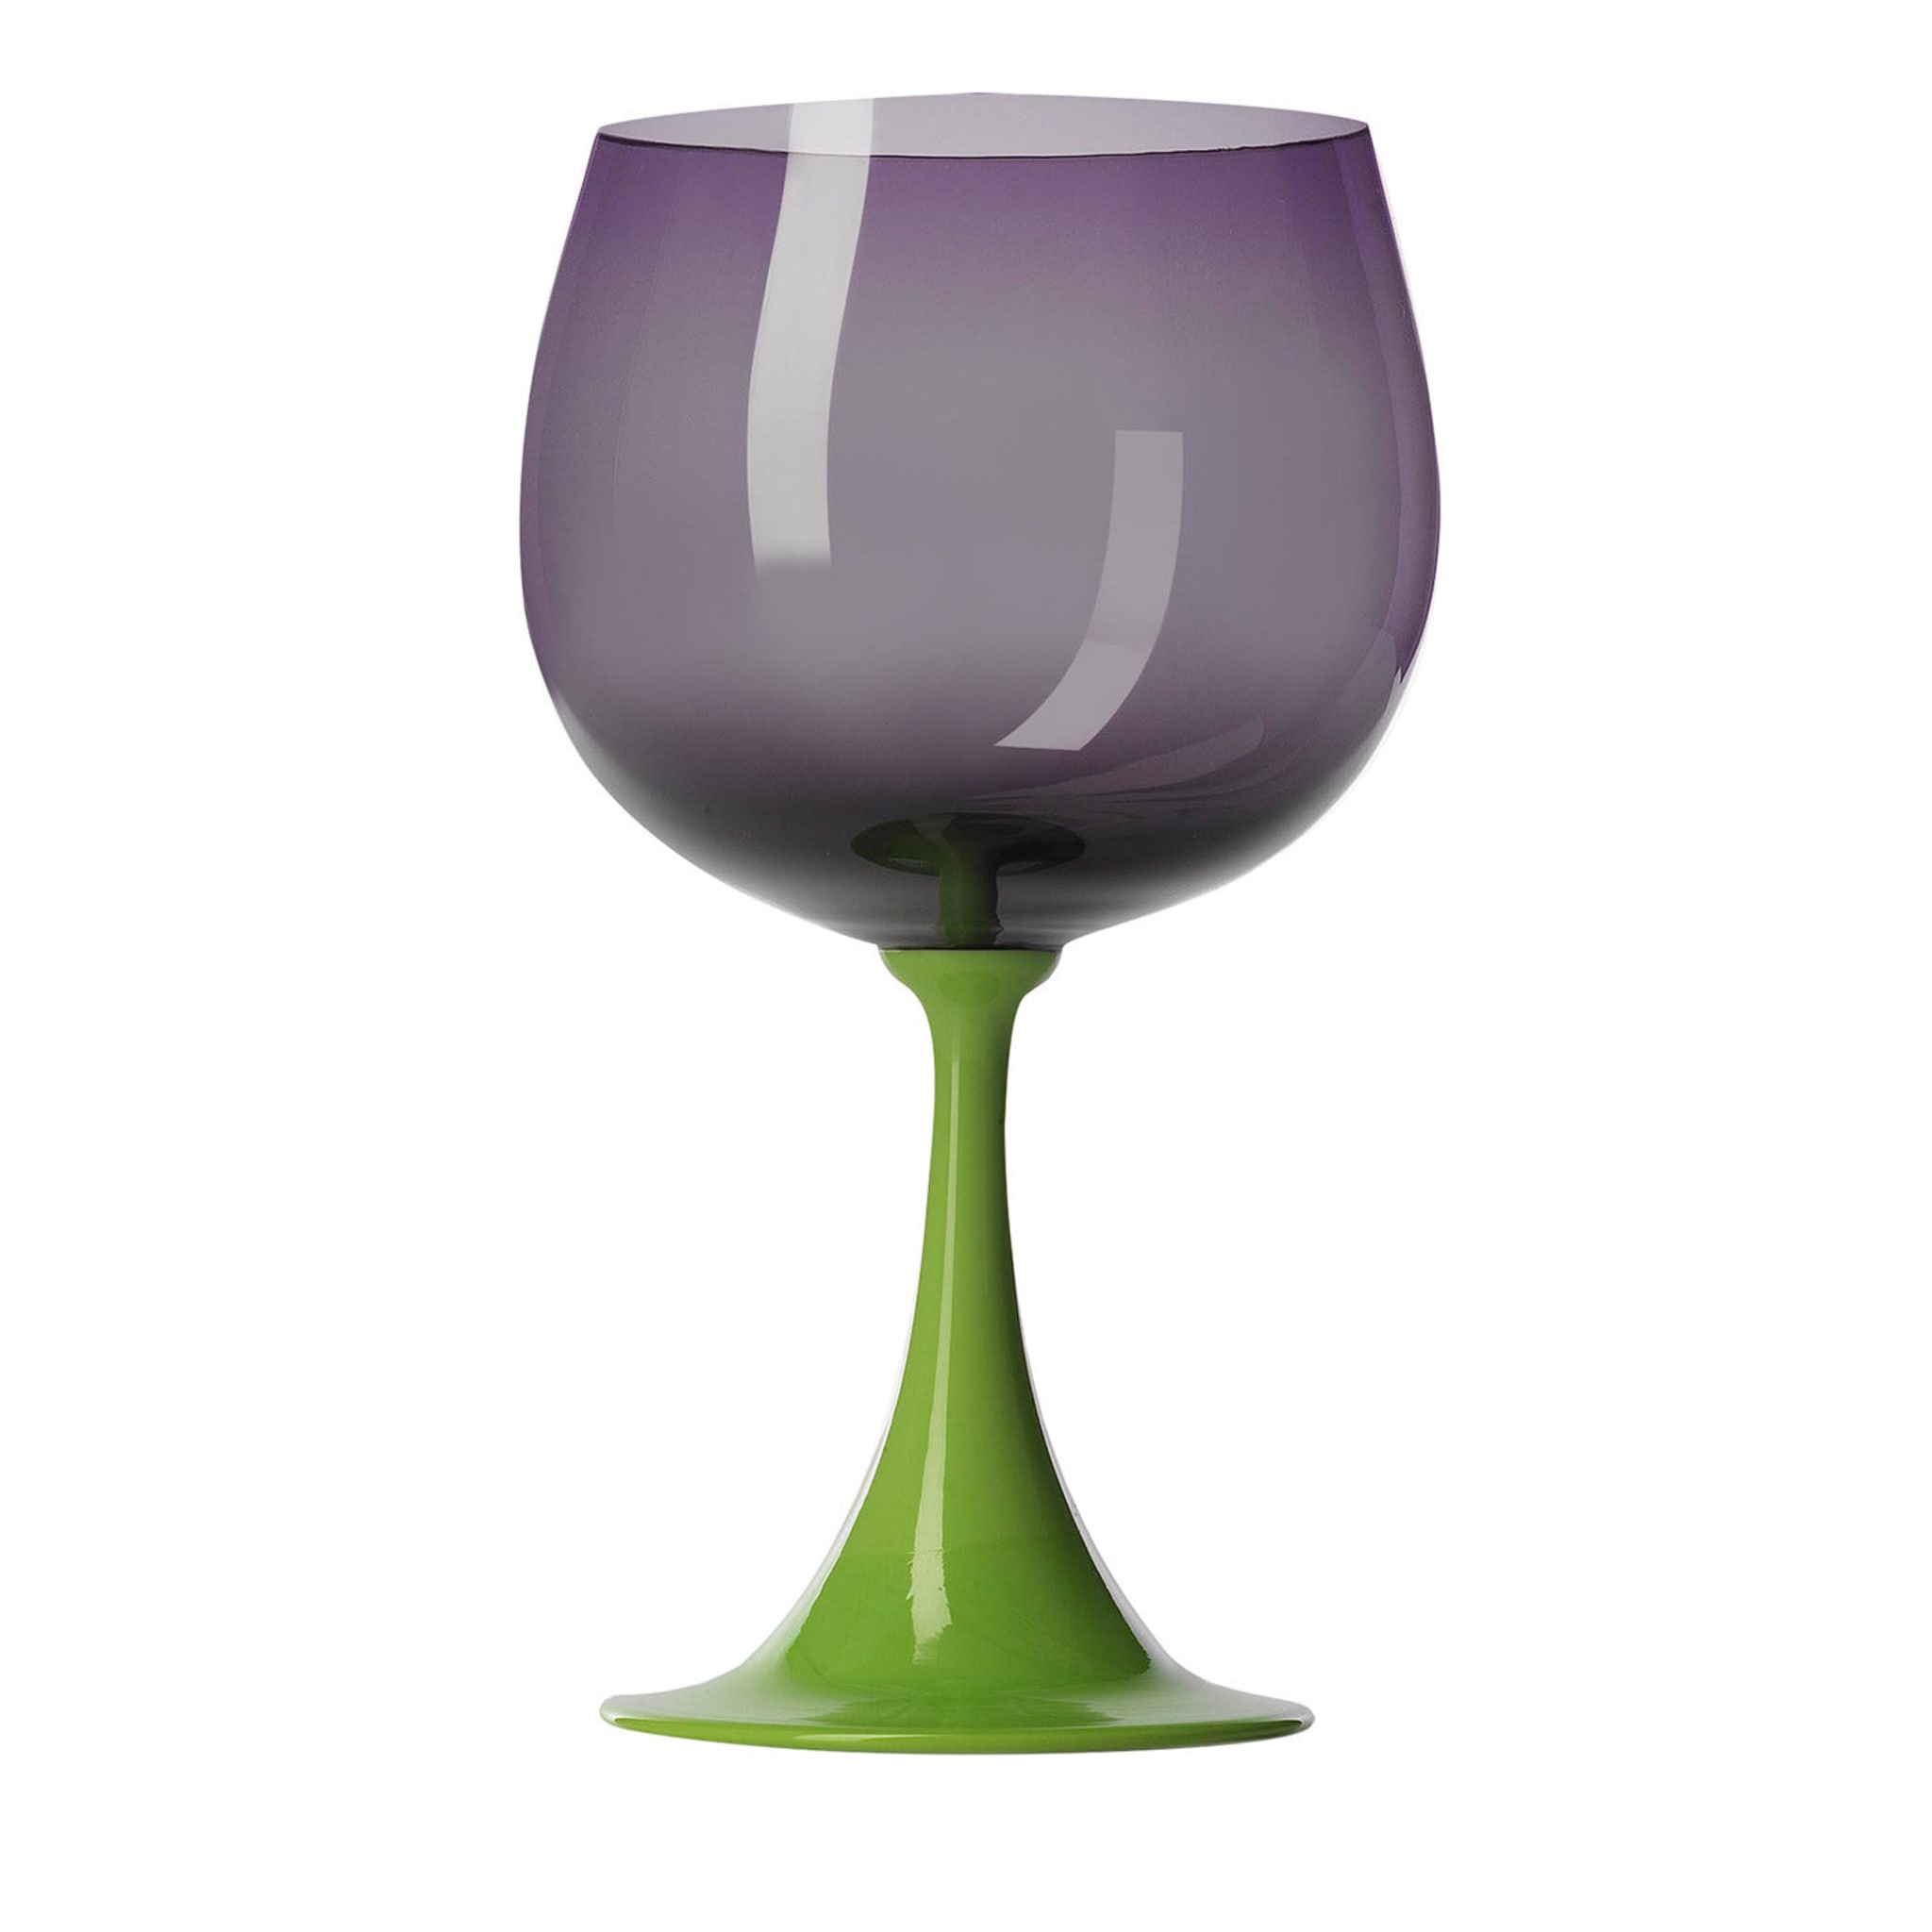 Burlesque Purple Burgundy Glass di NasonMoretti e Stefano Marcato - Vista principale